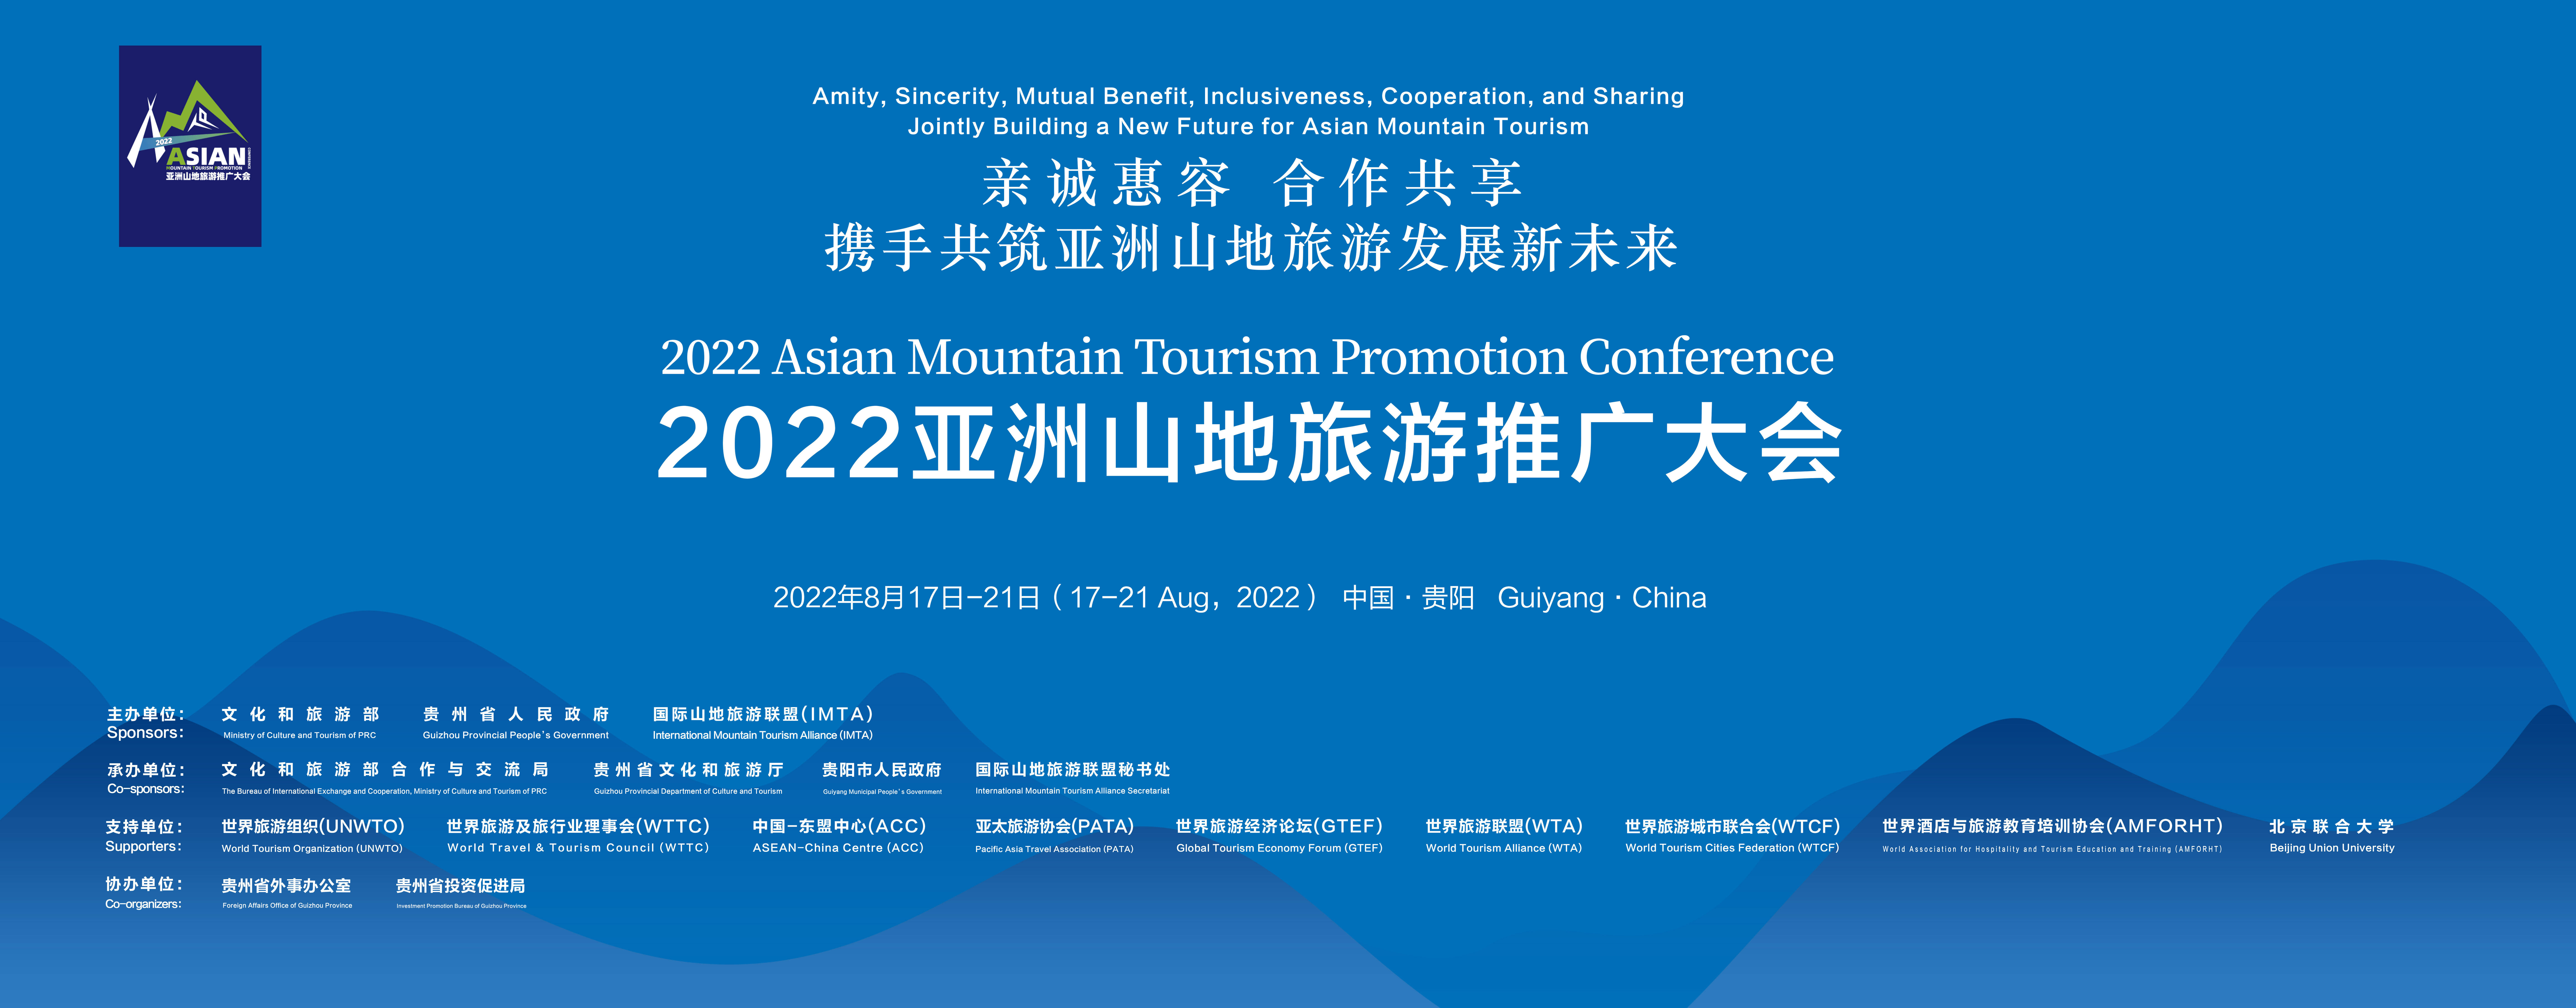 2022亚洲山地旅游推广大会 | 群响和他的CEO朋友们